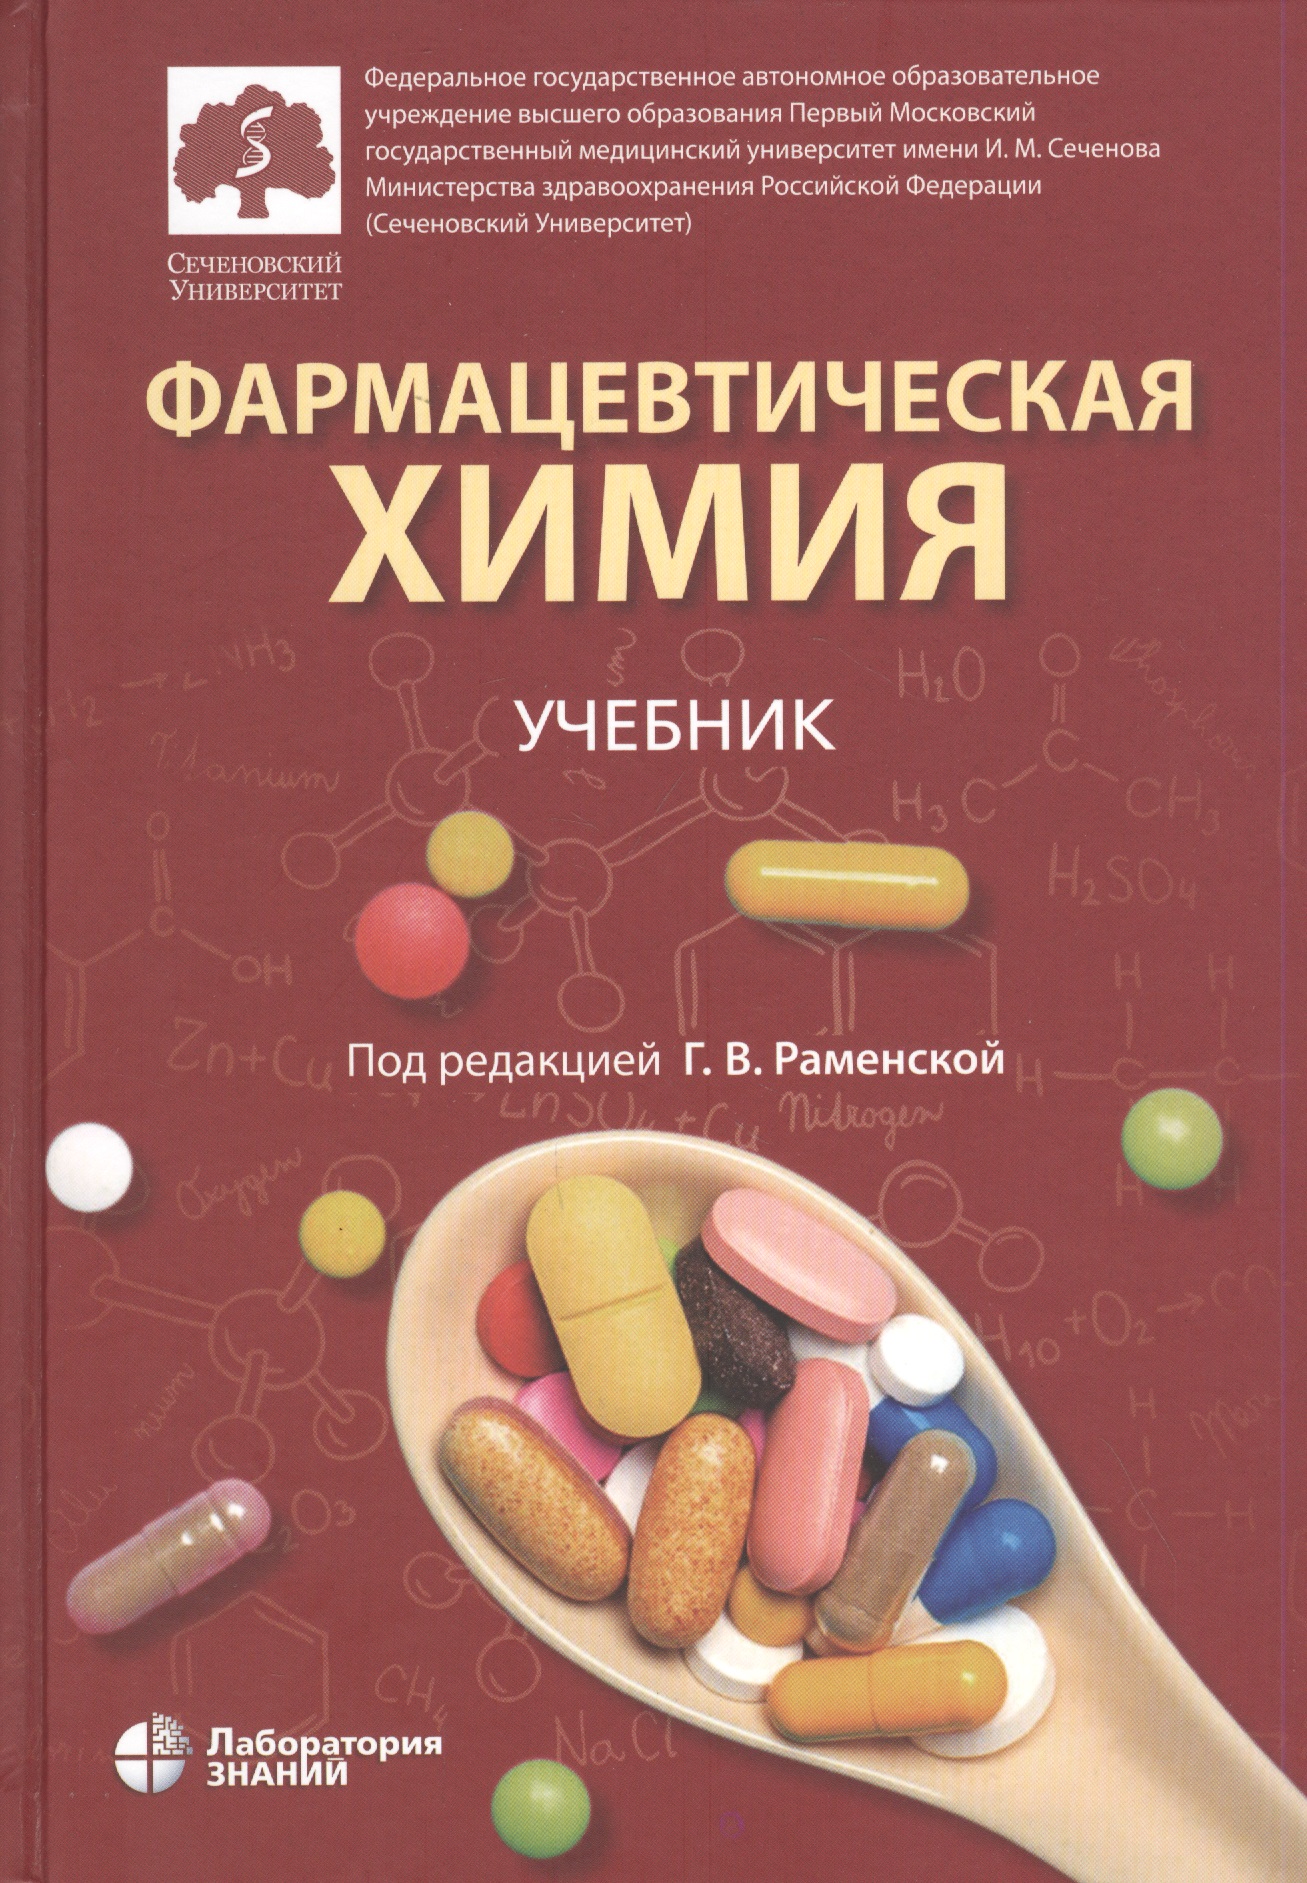 Фармацевтическая химия. Учебник раменская г ред фармацевтическая химия учебник